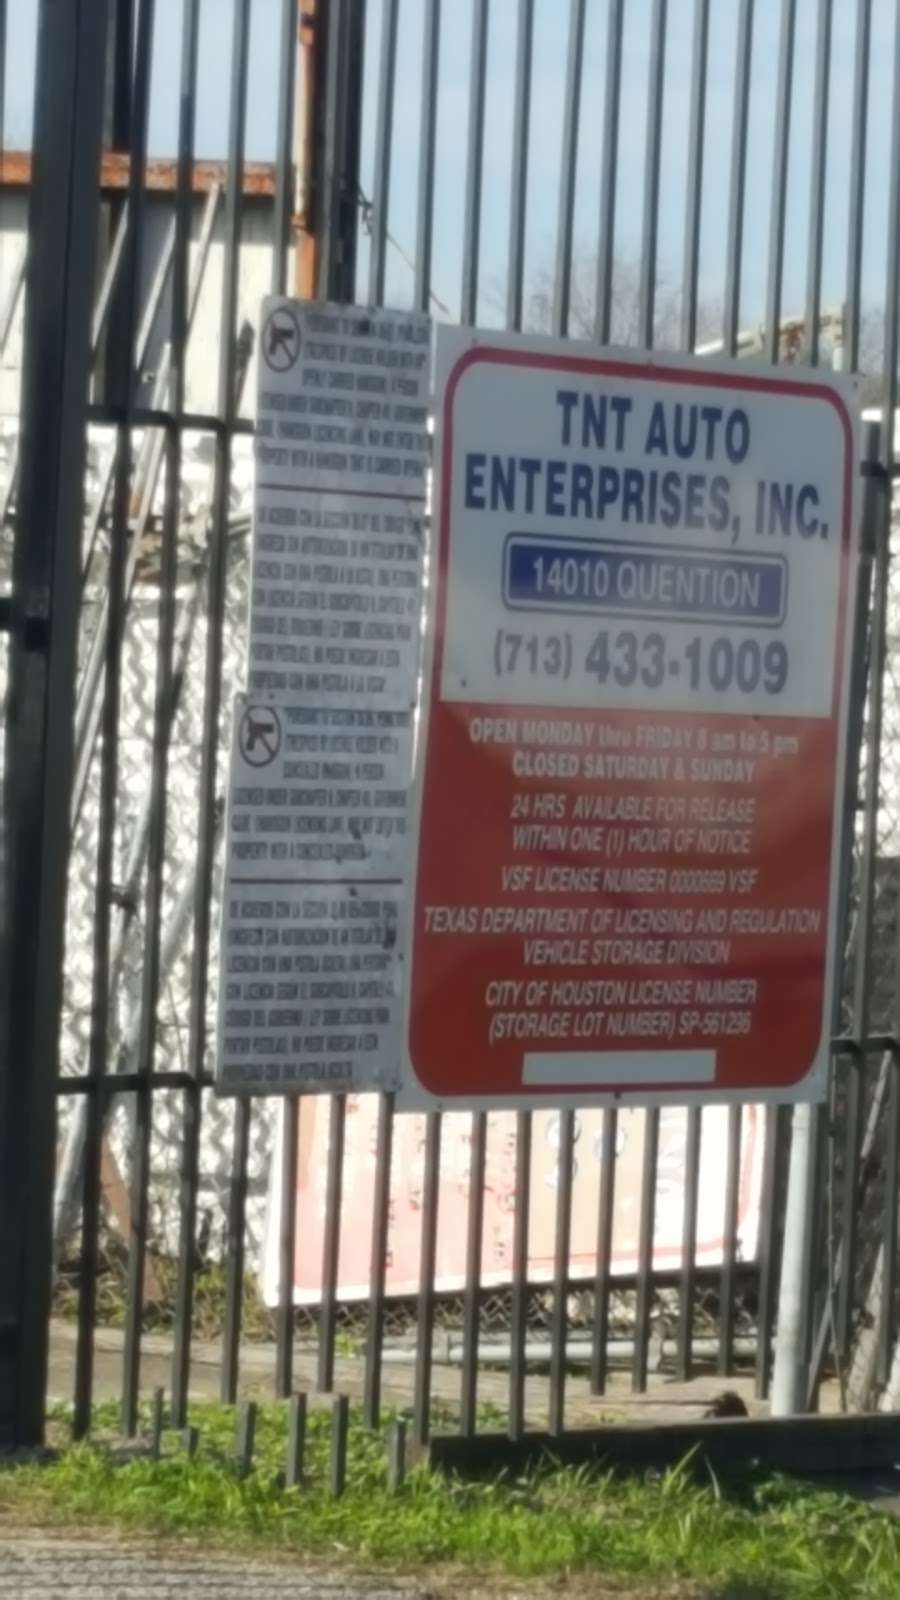 TNT Auto Enterprises Inc. | 14010 Quention Dr, Houston, TX 77045, USA | Phone: (713) 433-1009